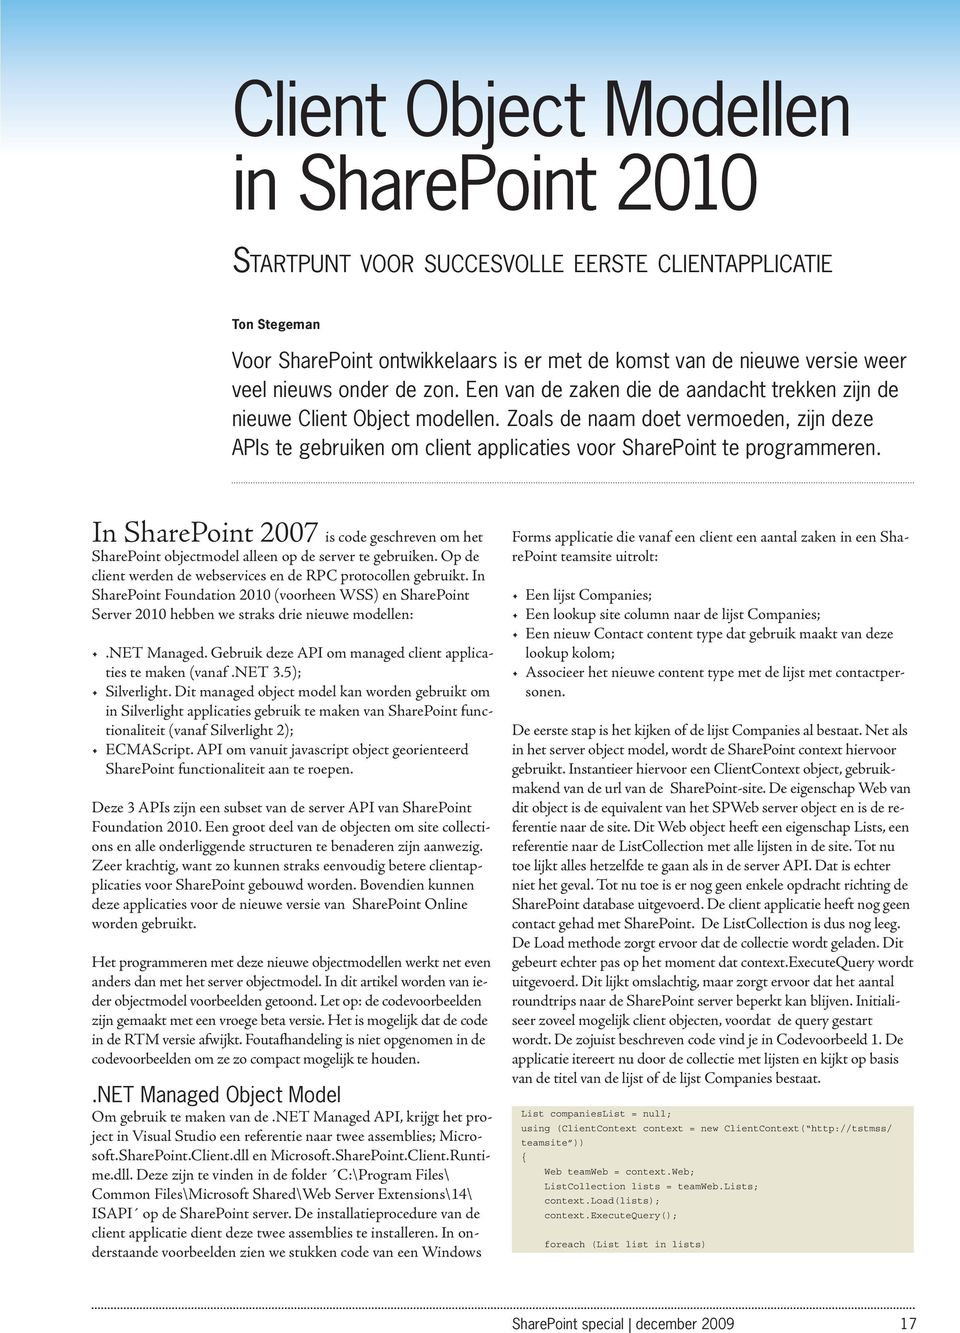 In SharePoint 2007 is code geschreven om het SharePoint objectmodel alleen op de server te gebruiken. Op de client werden de webservices en de RPC protocollen gebruikt.